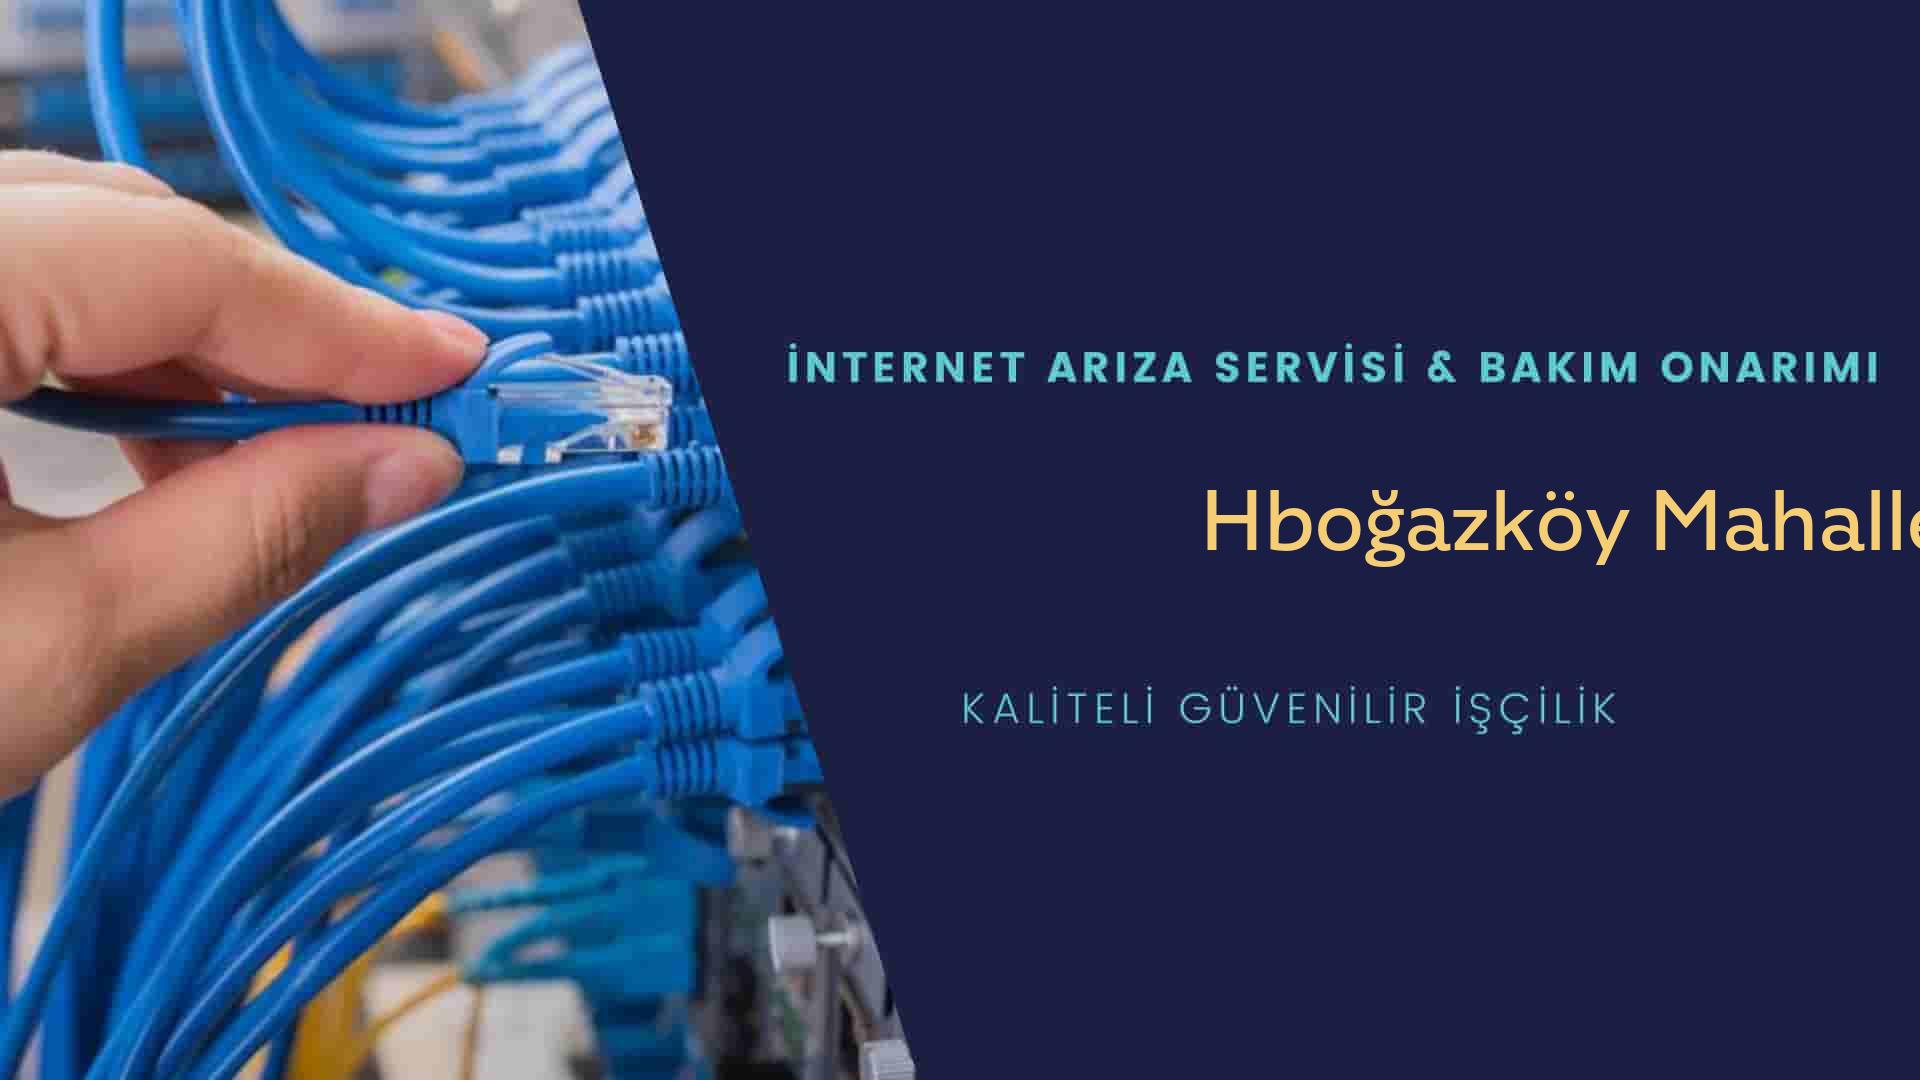 Hboğazköy Mahallesi internet kablosu çekimi yapan yerler veya elektrikçiler mi? arıyorsunuz doğru yerdesiniz o zaman sizlere 7/24 yardımcı olacak profesyonel ustalarımız bir telefon kadar yakındır size.